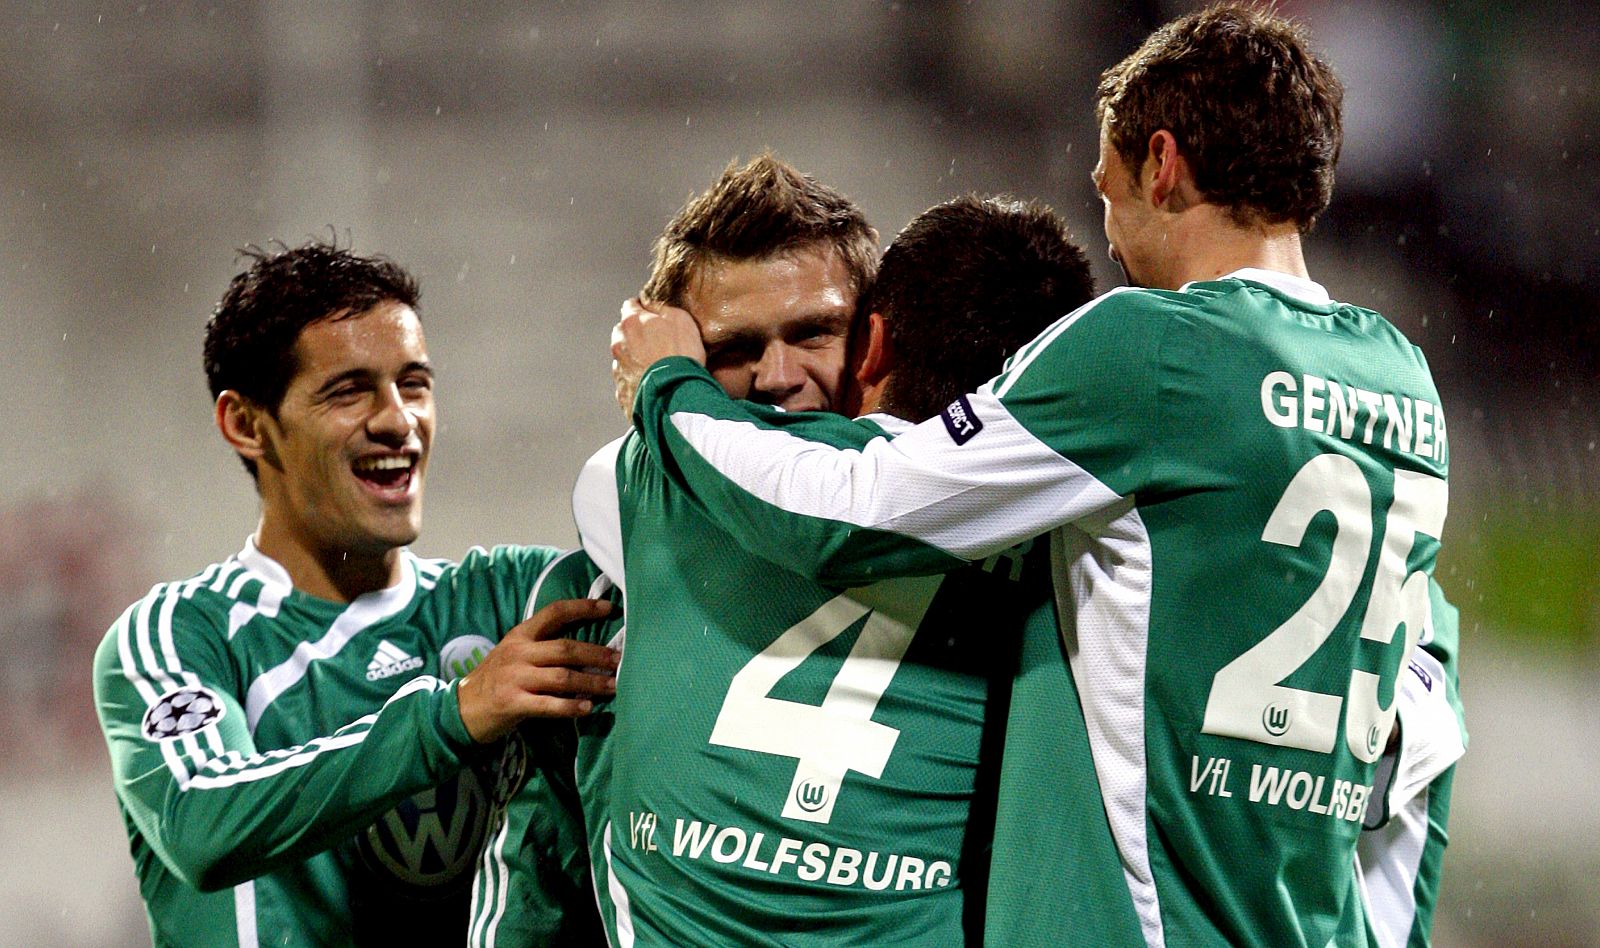 Misimovic del Vfl Wolfsburgo, (c), celebra junto a sus compañeros tras marcar el primer gol al Besiktas